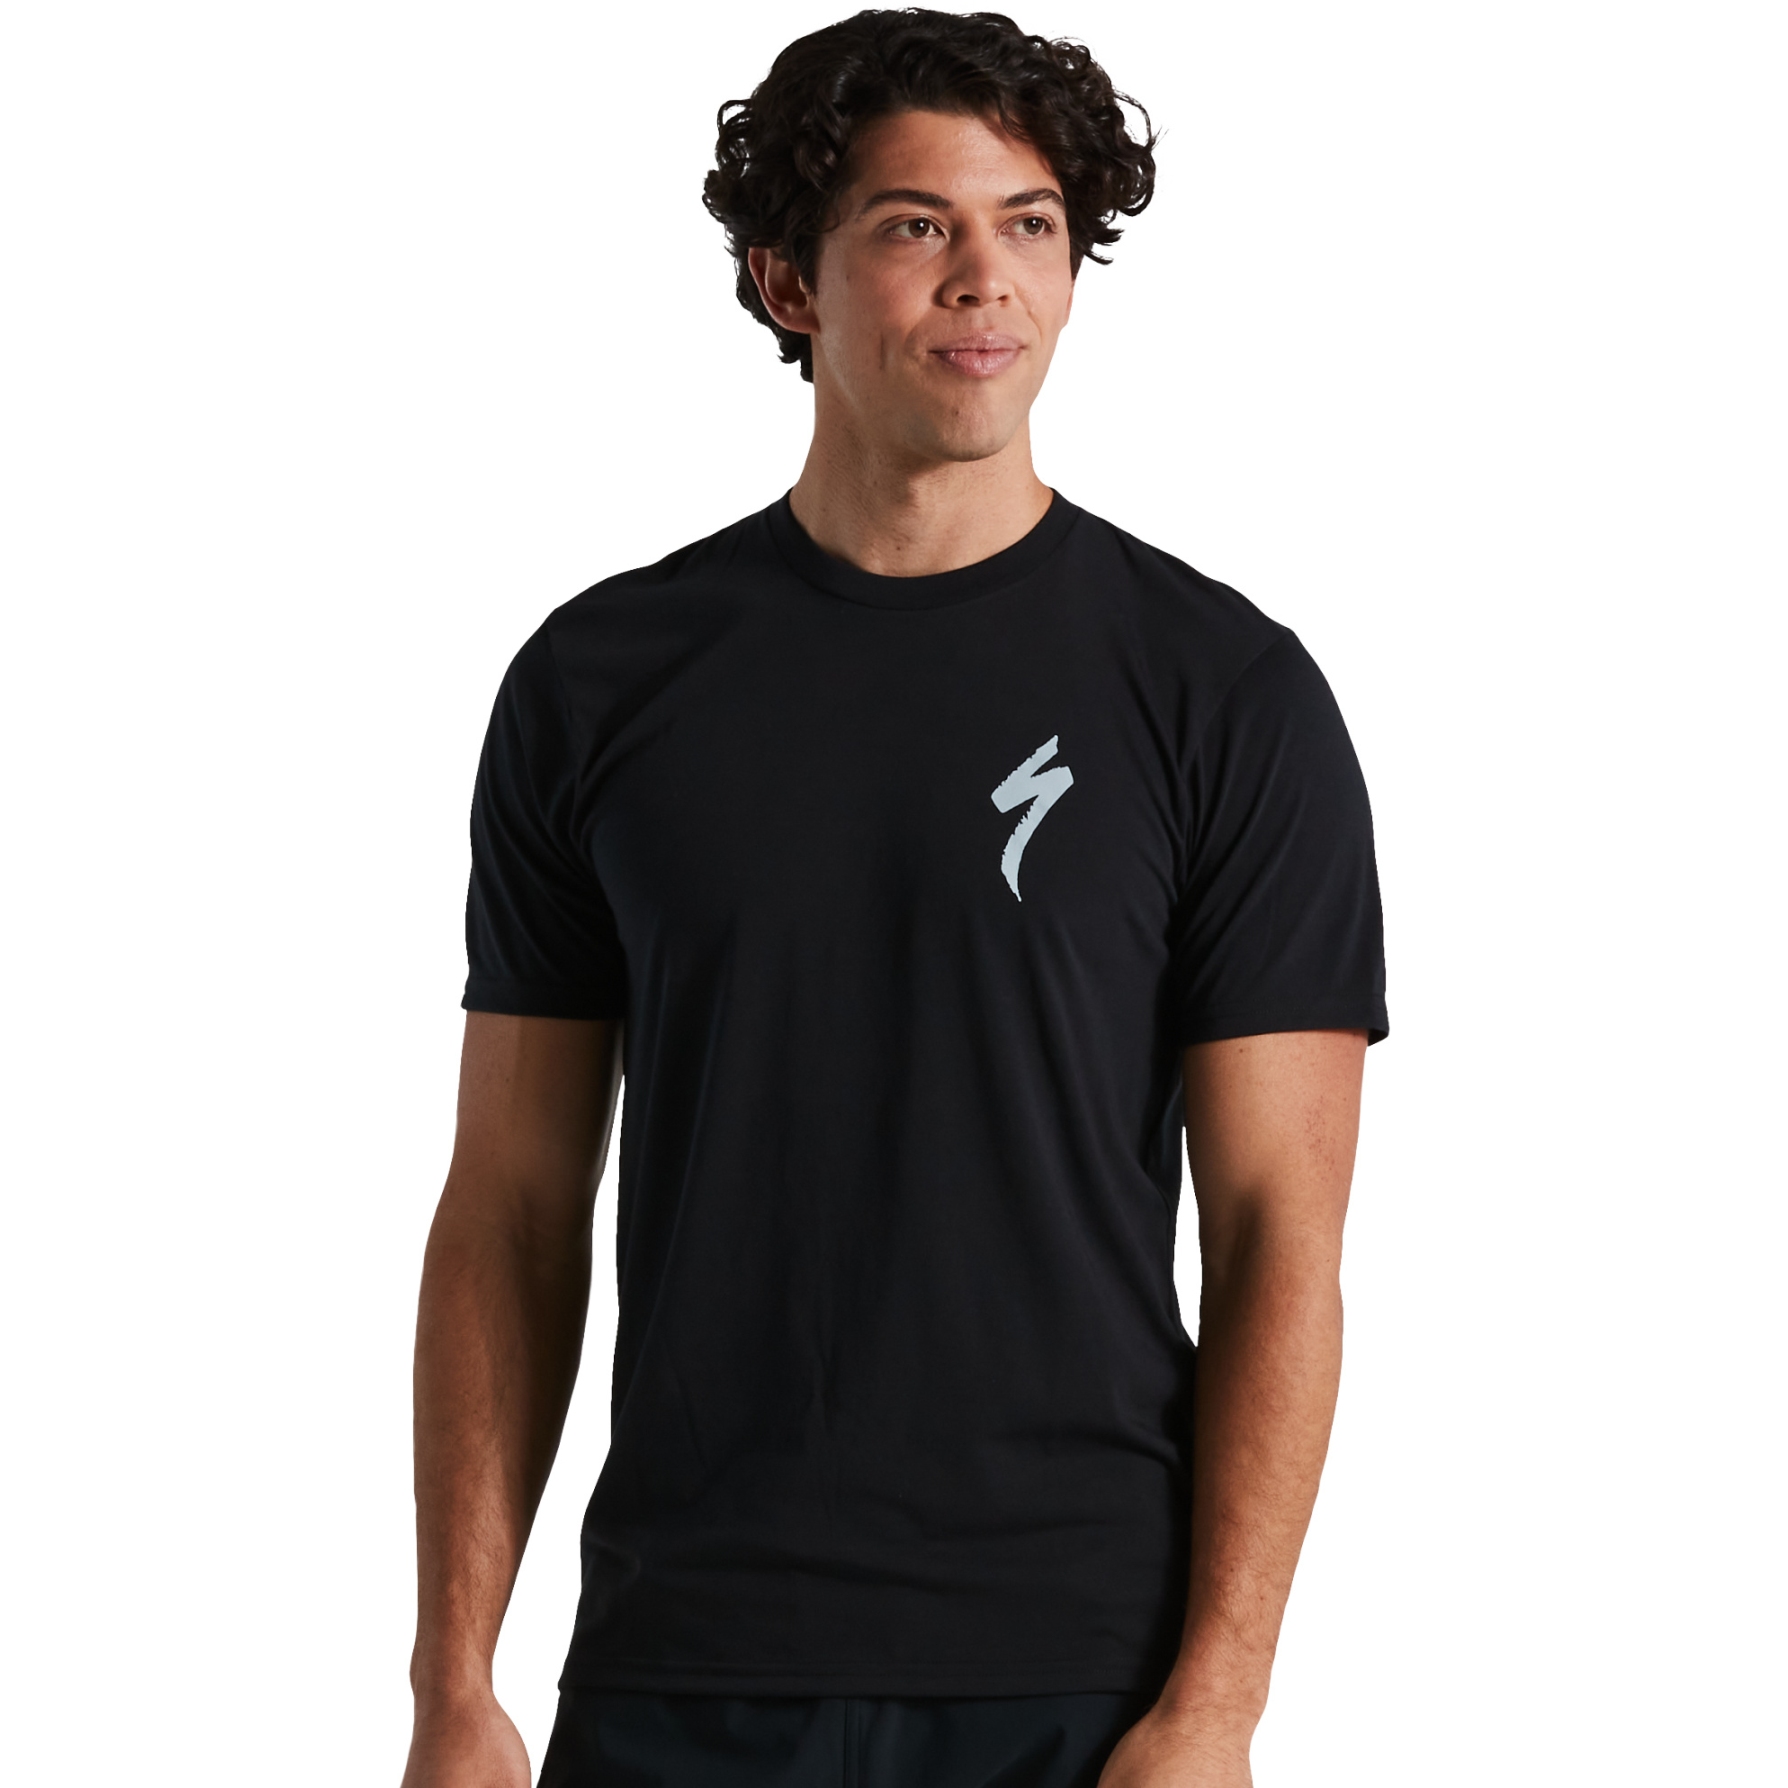 Produktbild von Specialized S-Logo T-Shirt - schwarz